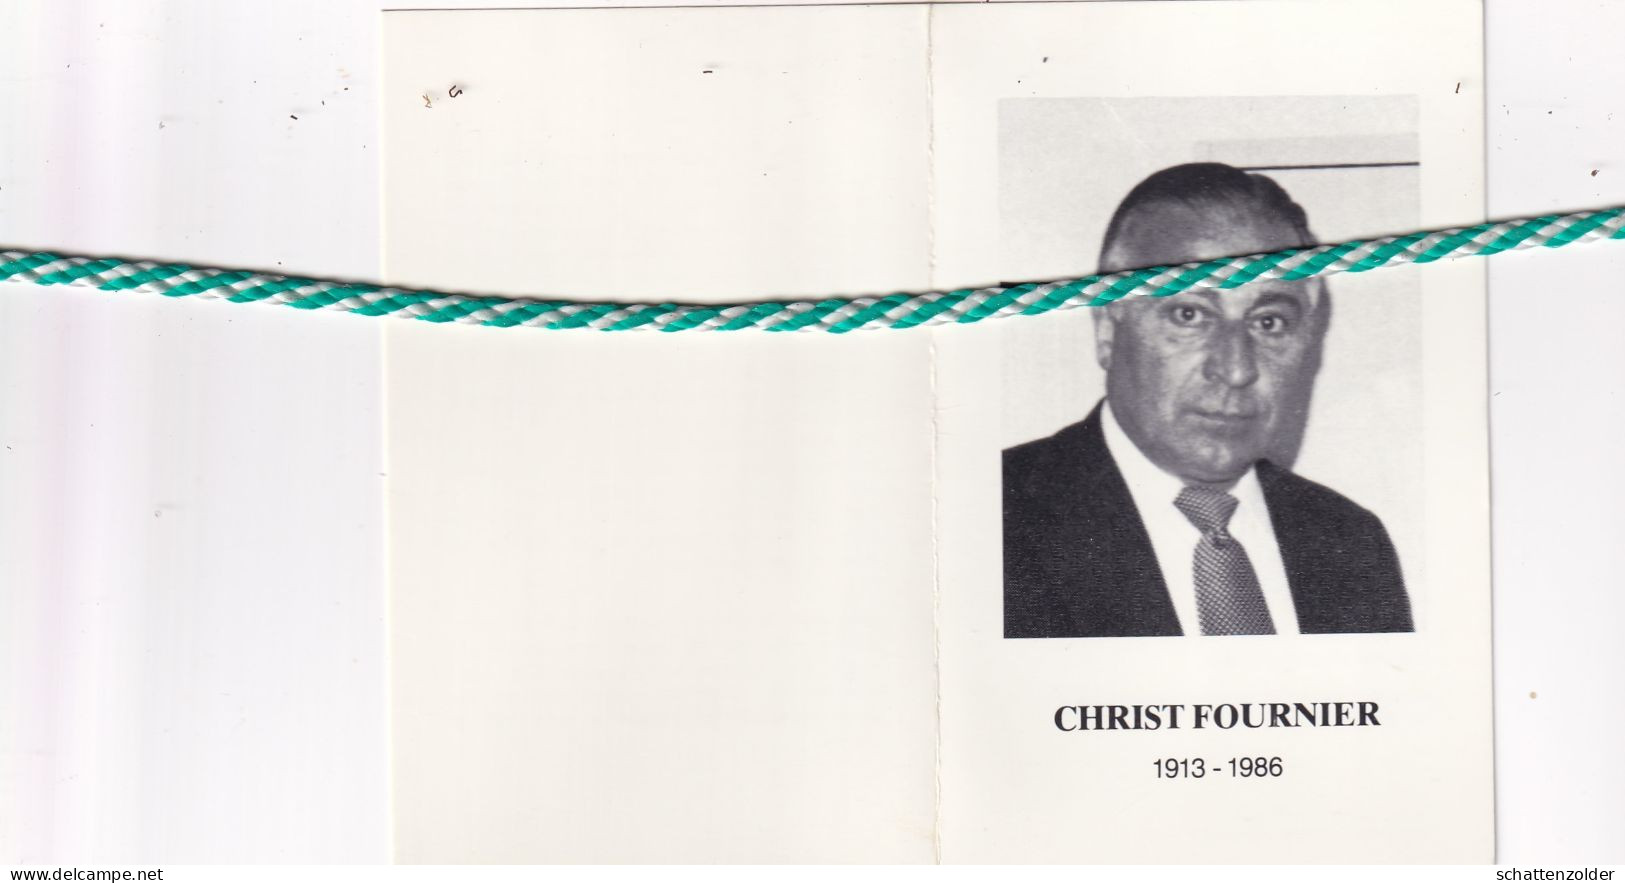 Christ Fournier-Janssens, Knokke 1913, 1986. Haarkapper O.r. Oud-speler R.F.C. Knokke; Oud-strijder 40-45; Foto - Obituary Notices